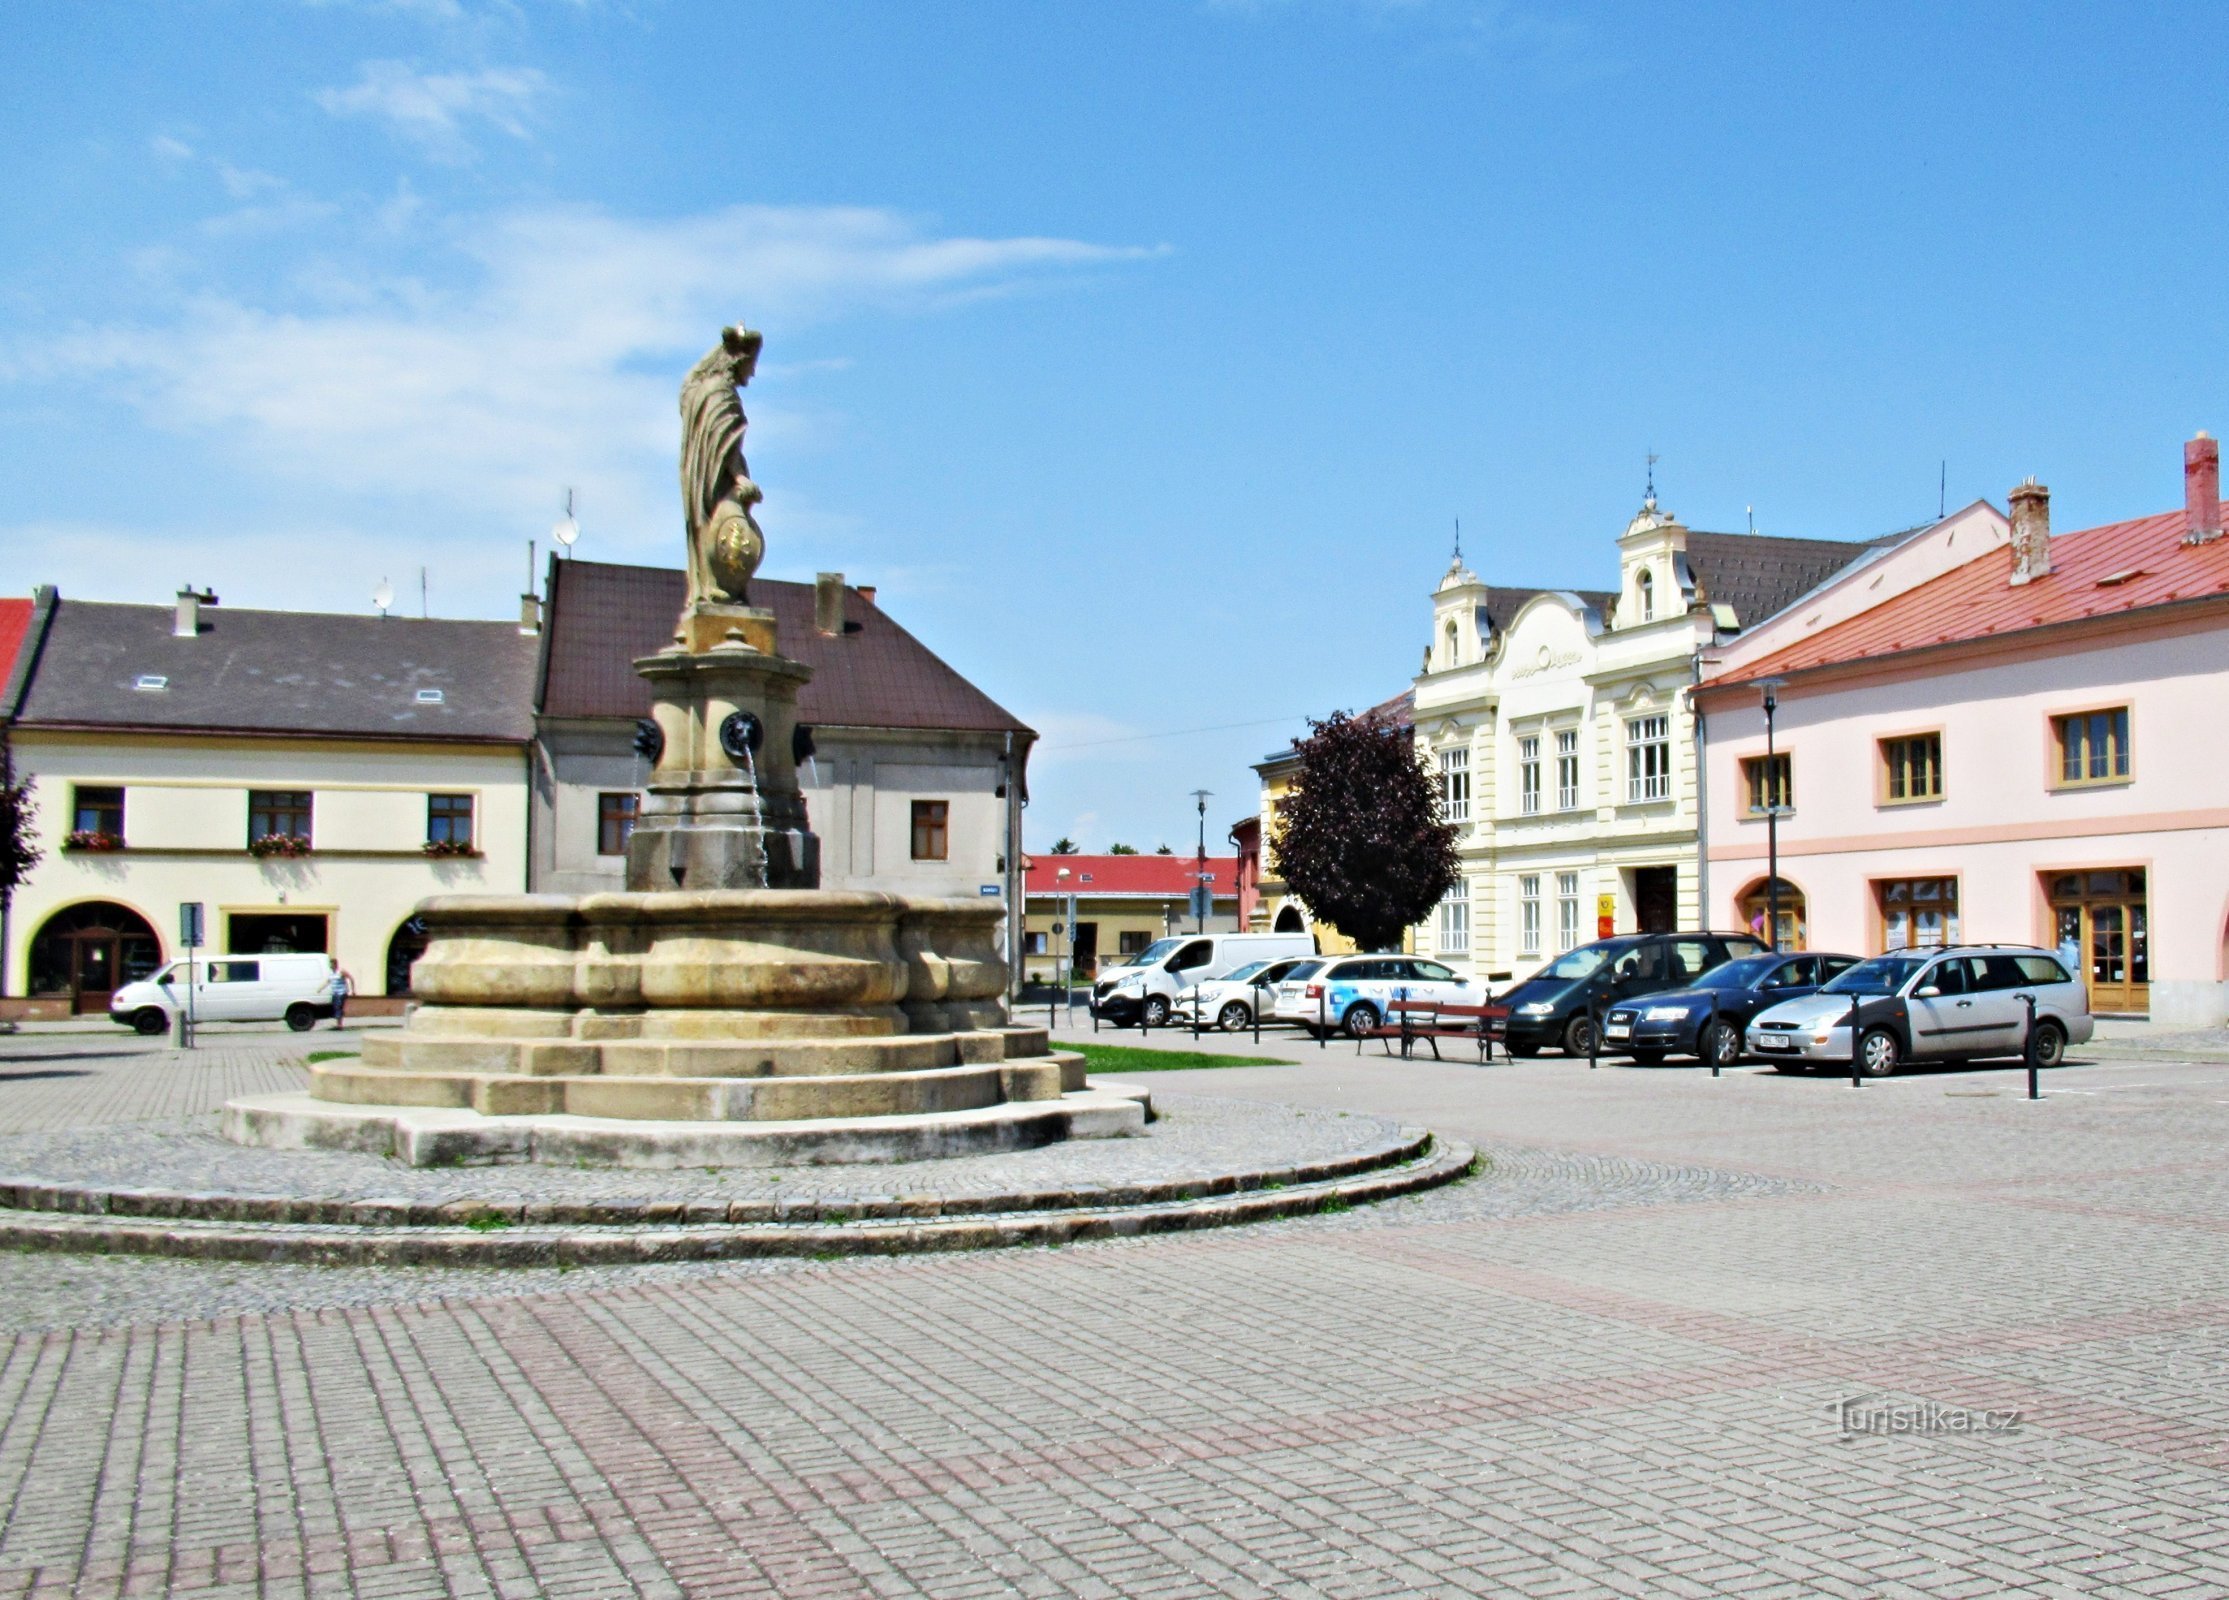 Zgodovinski vodnjak na trgu v Tovačovem